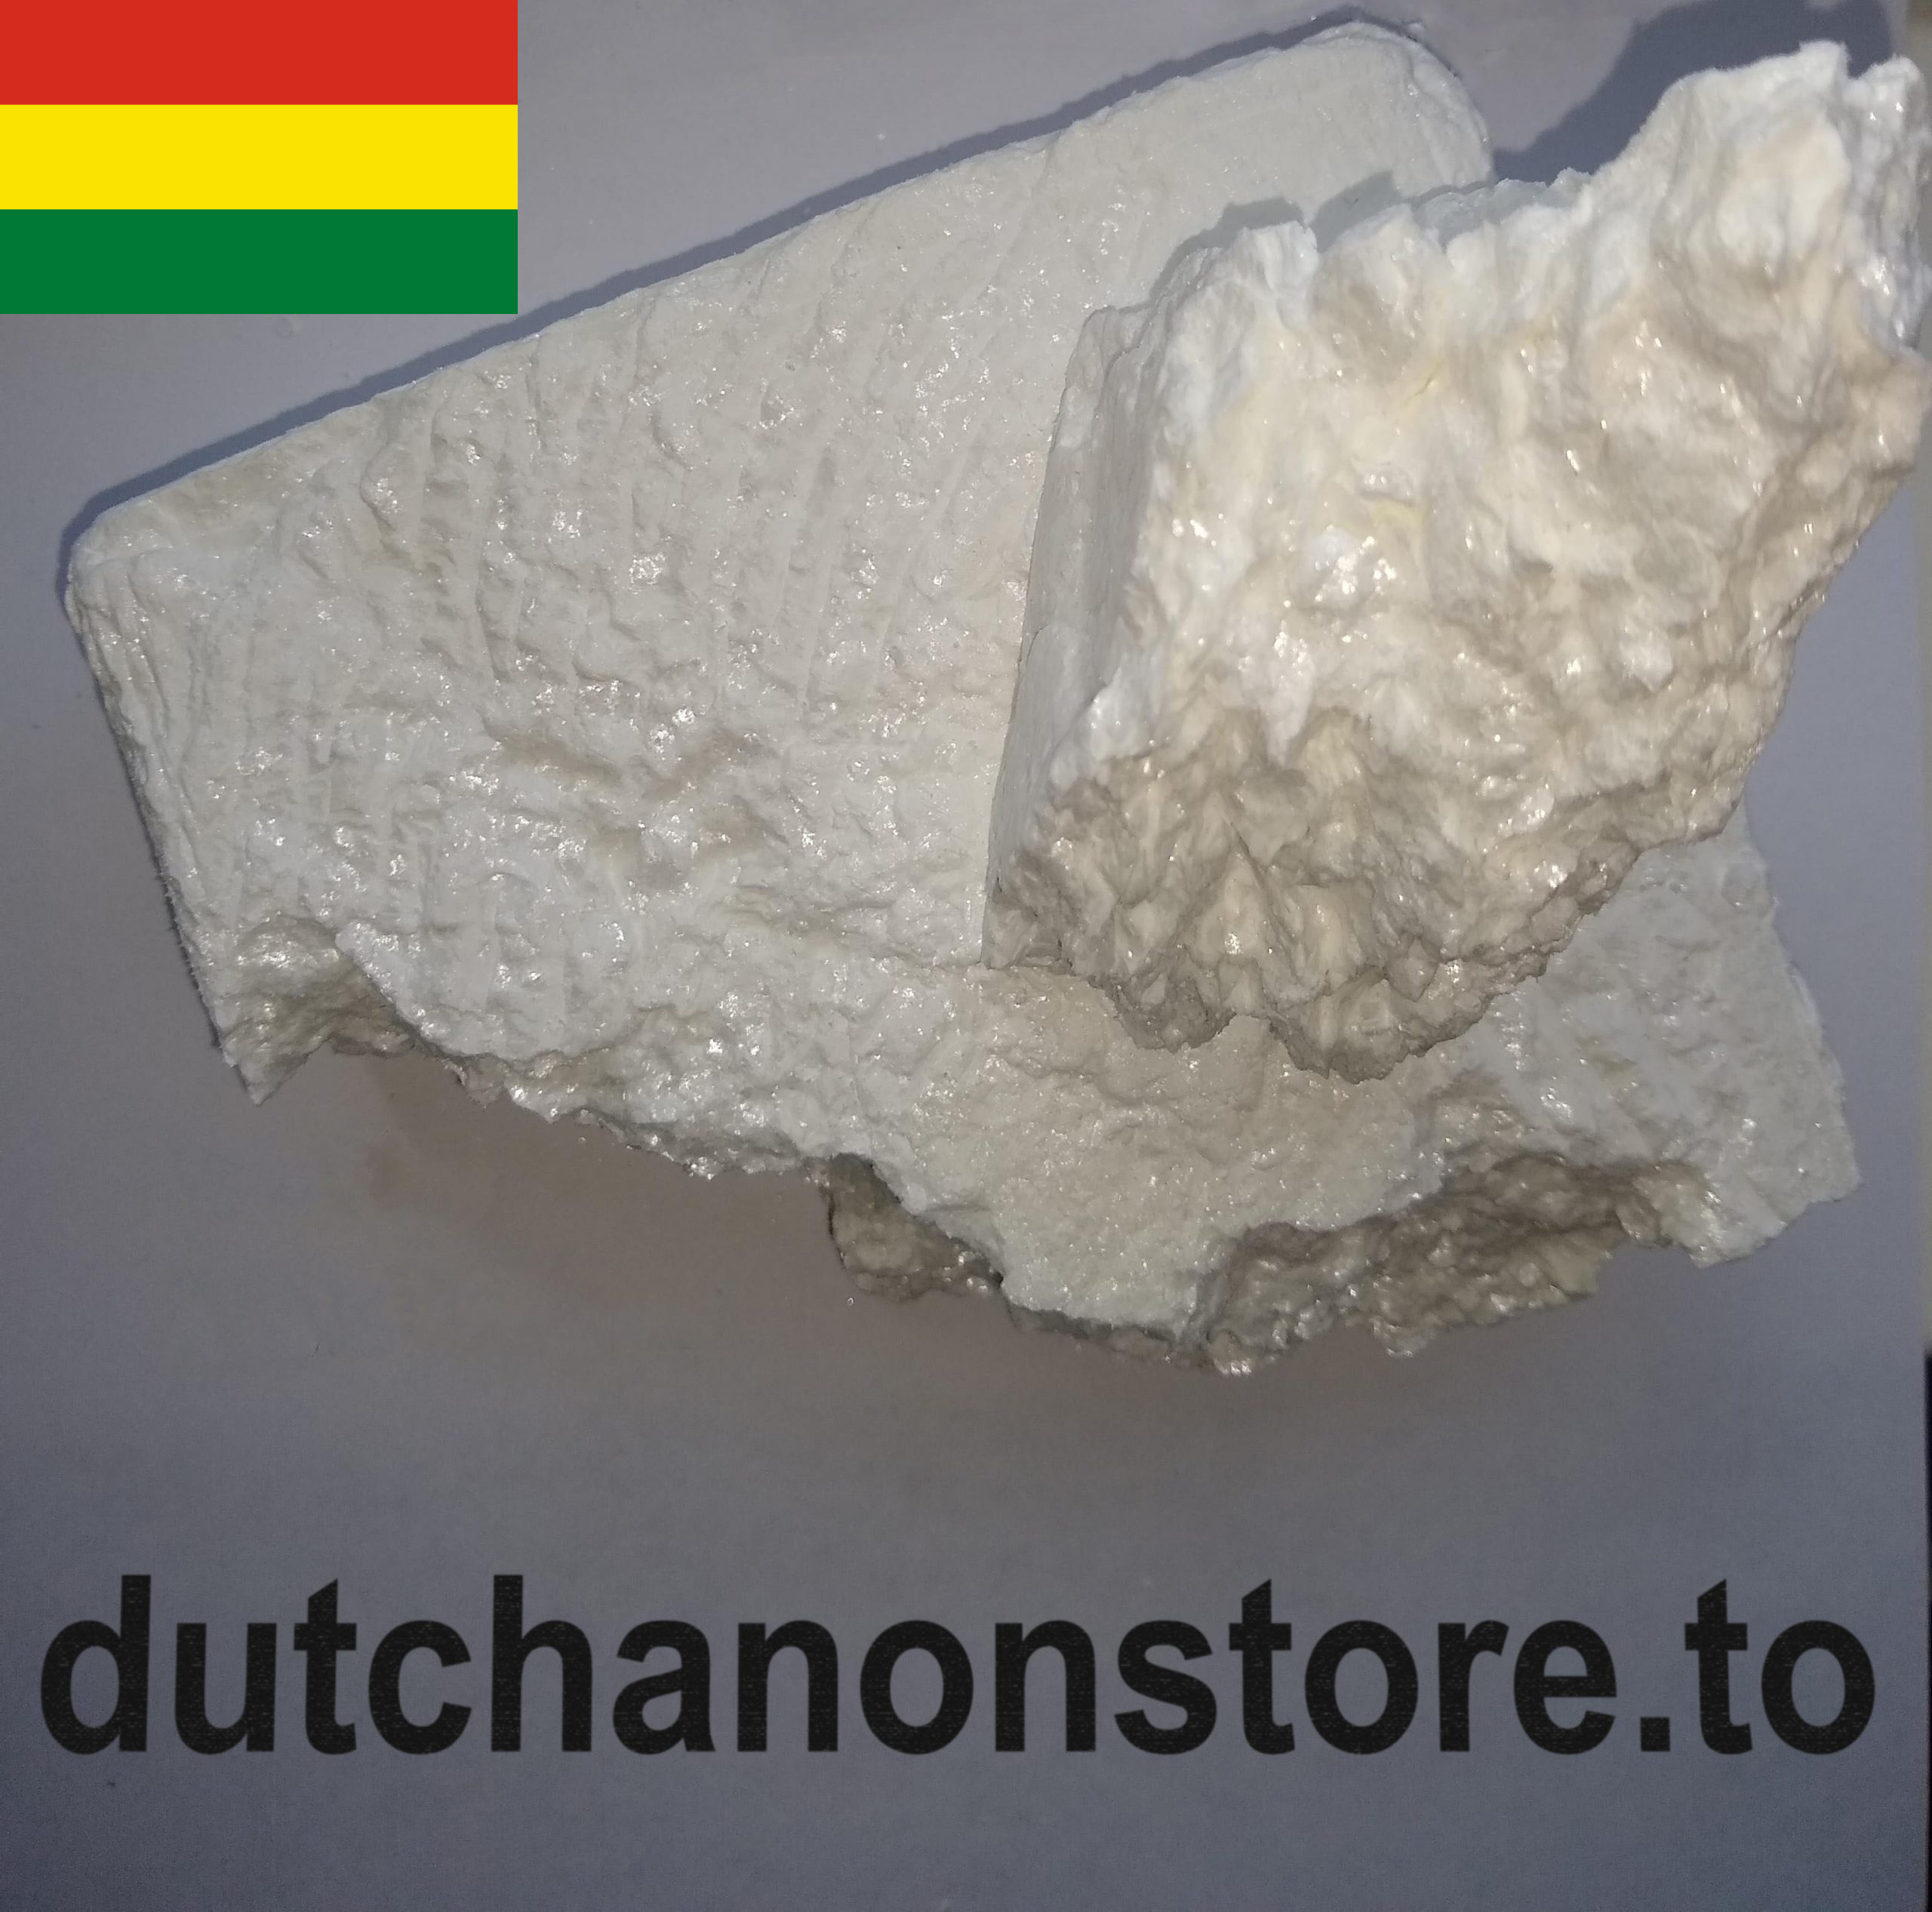 1g-250g ELITE BOLIVIAN Flake Cocaine 98% - ONLY ROCKS (UK 2 UK) Image